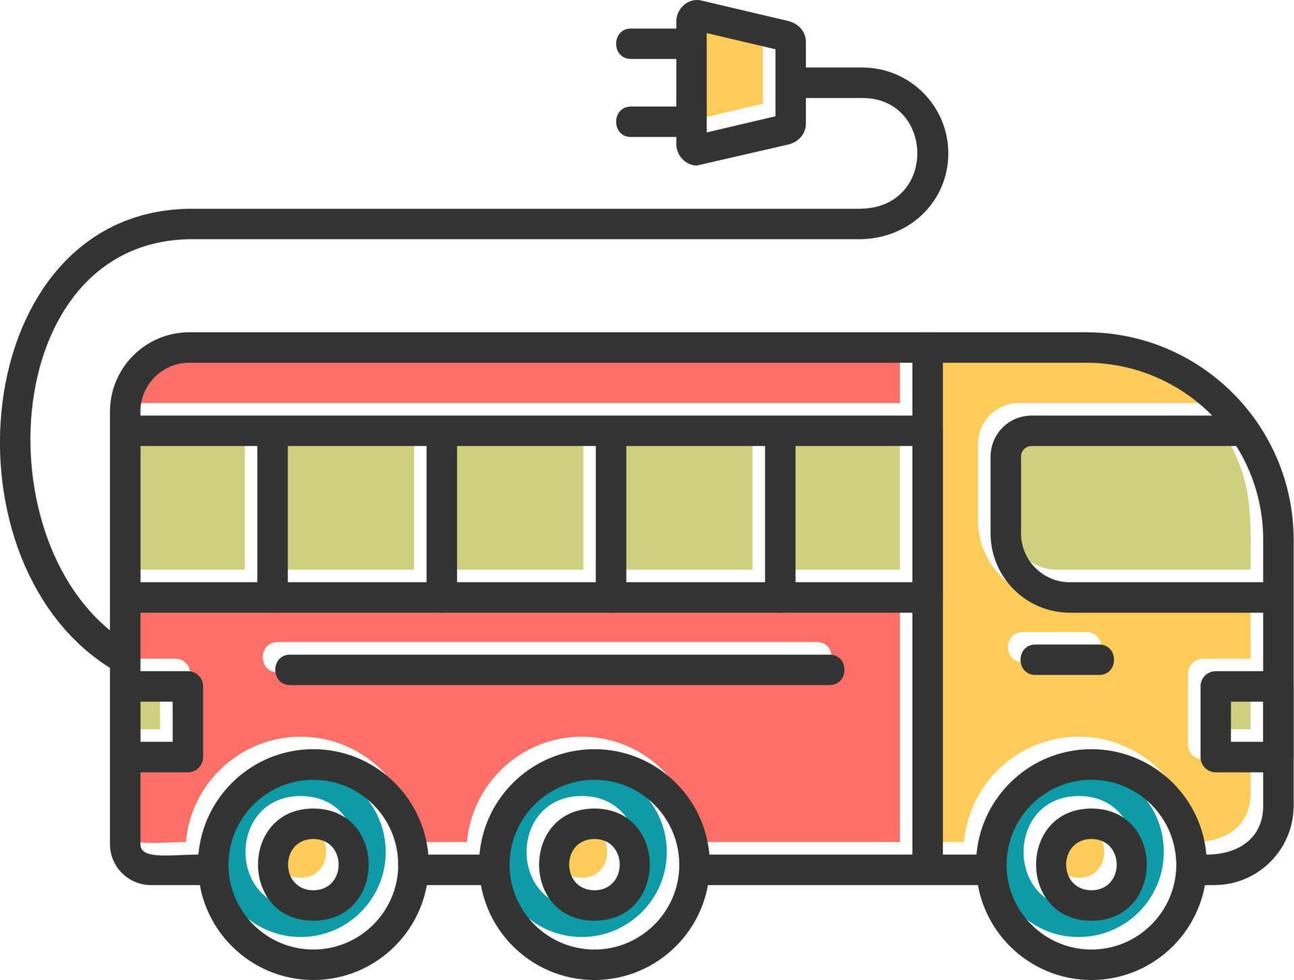 Electric Bus vector icon